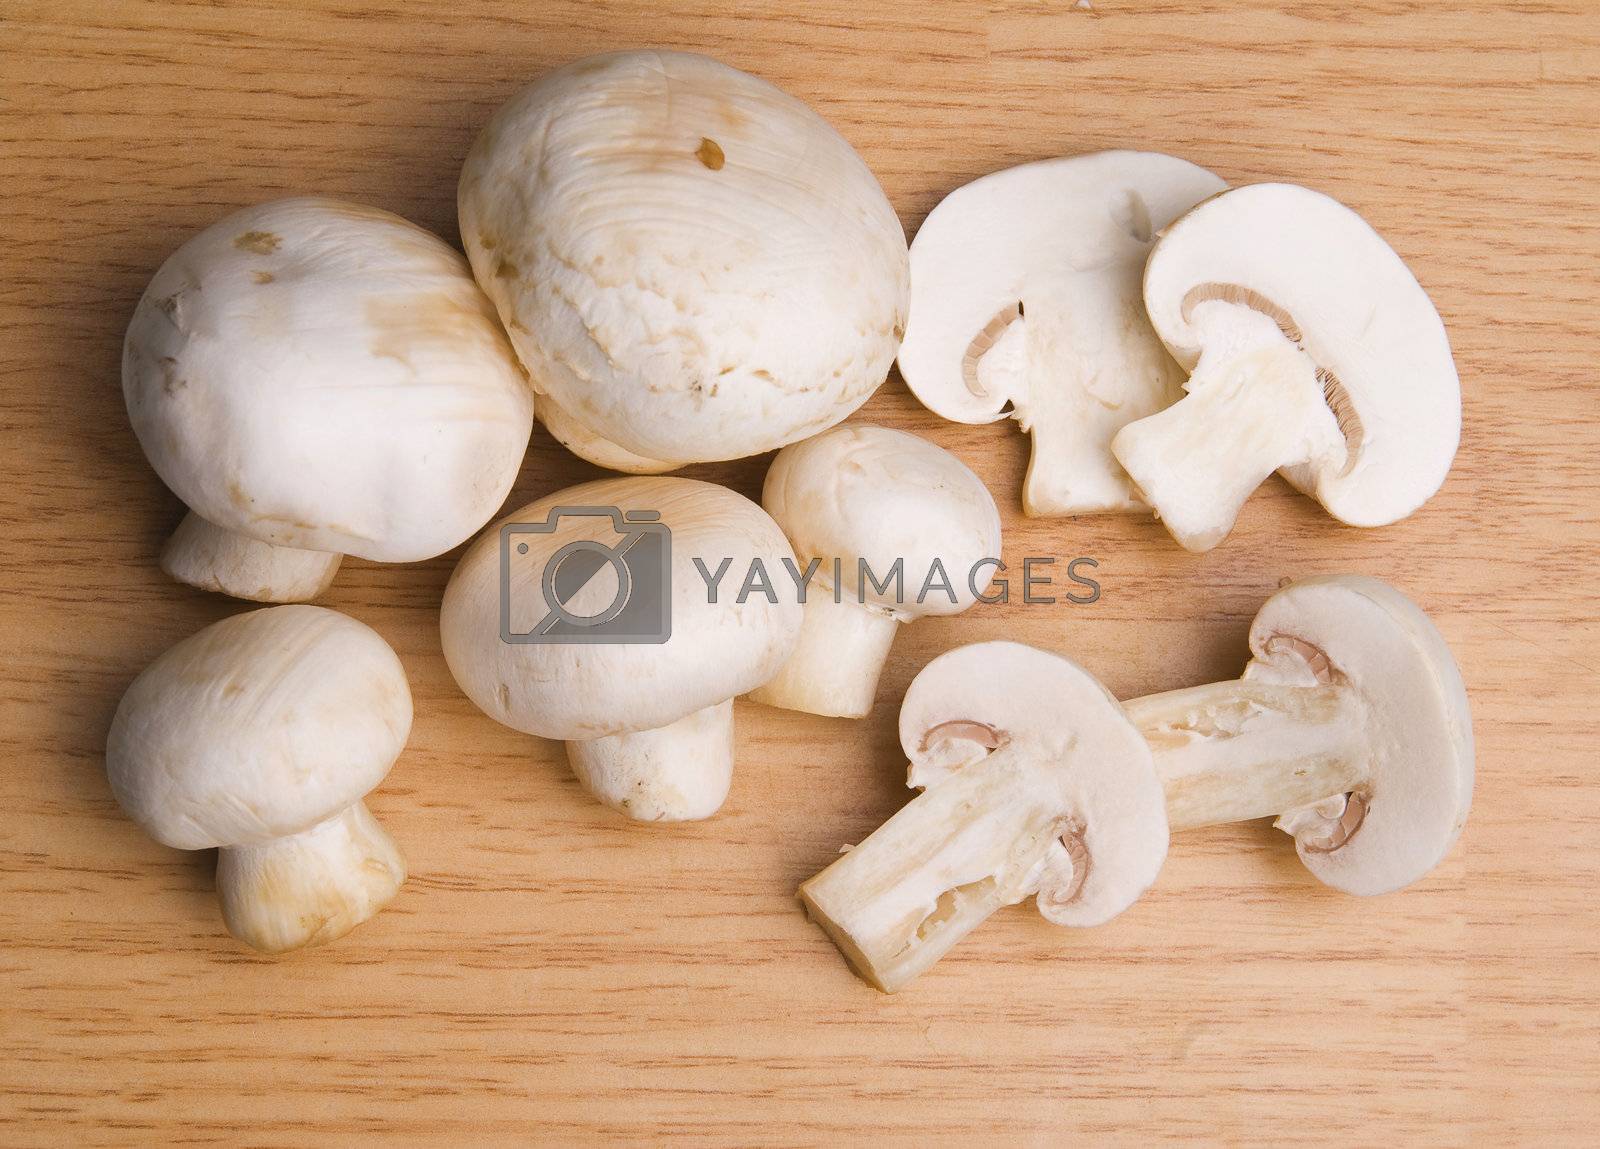 Royalty free image of Mushroom food by adamr